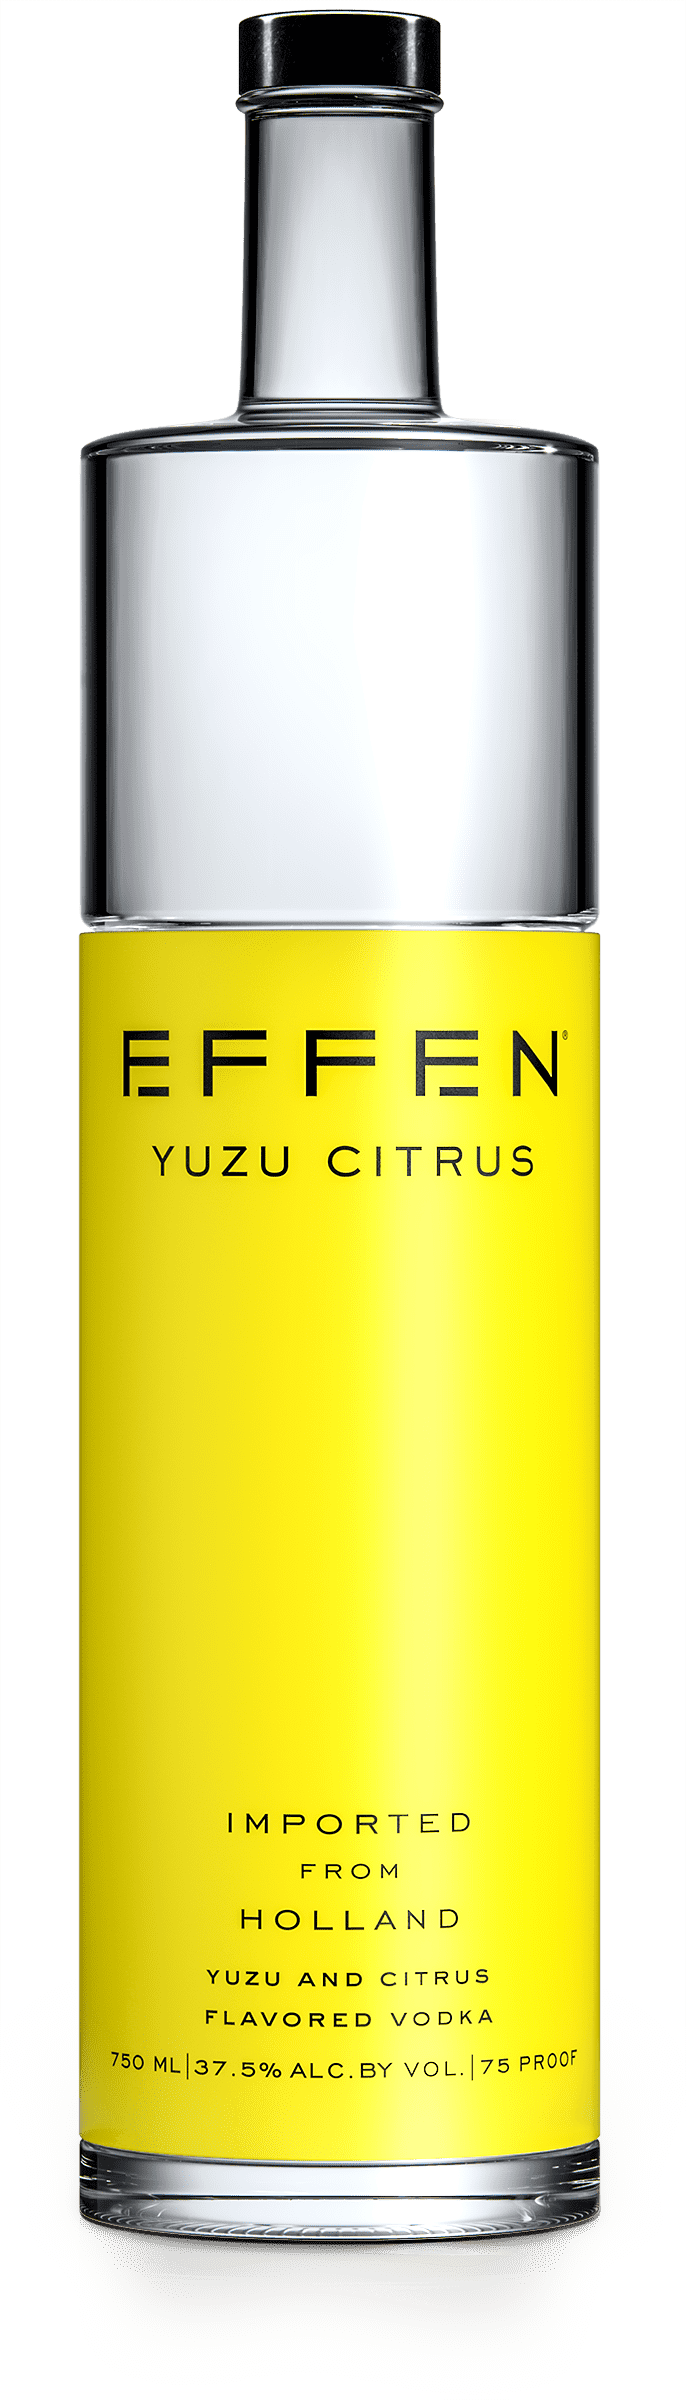 EFFEN Citrus Yuzu Vodka bottle shot